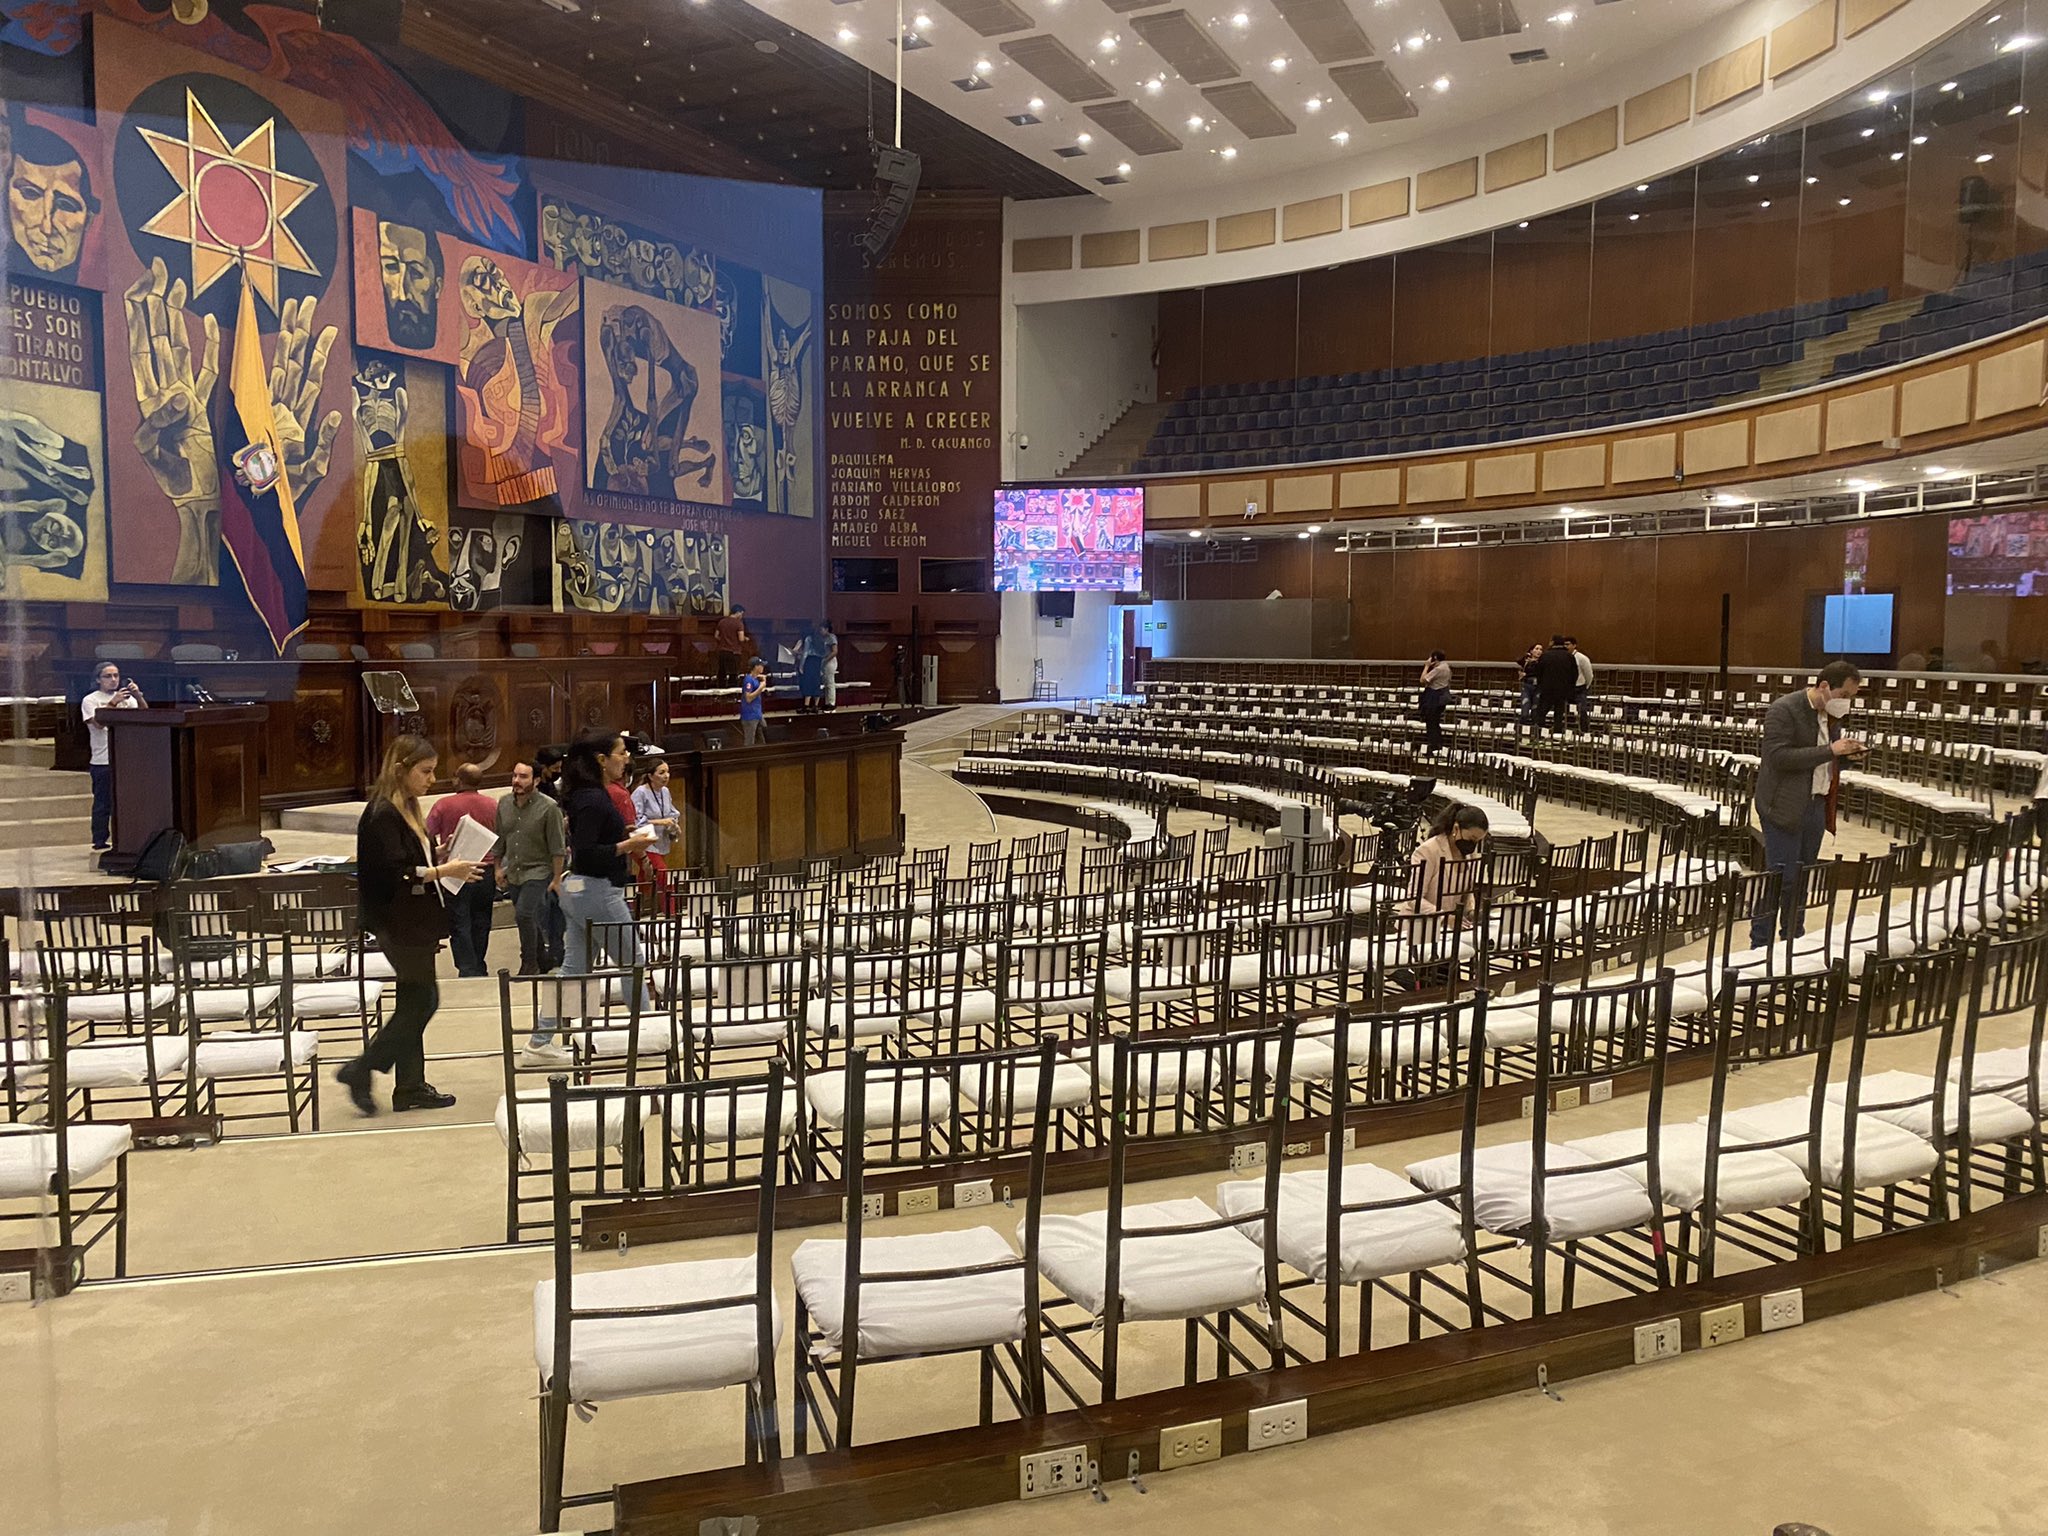 El salón plenario de la Asamblea es acondicionado para recibir al menos 500 invitados (foto cortesía).